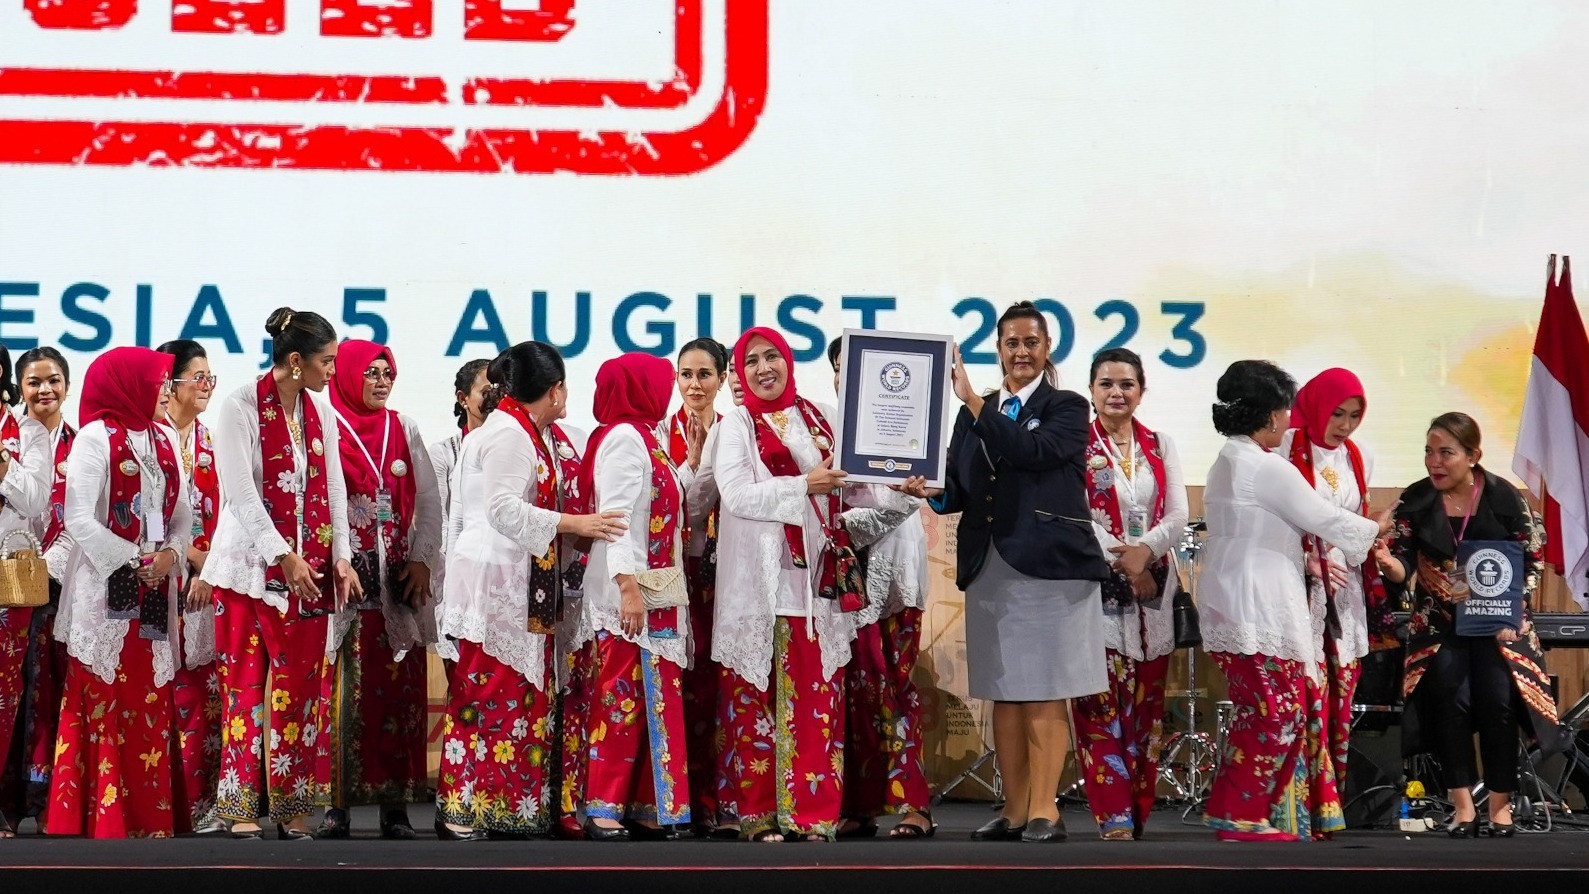 Indonesia berhasil memecahkan Guinness World Records (GWR) melalui pergelaran angklung terbesar di dunia yang diikuti oleh 15.110 peserta di Stadion Utama Gelora Bung Karno, Jakarta, pada Sabtu (5/8).